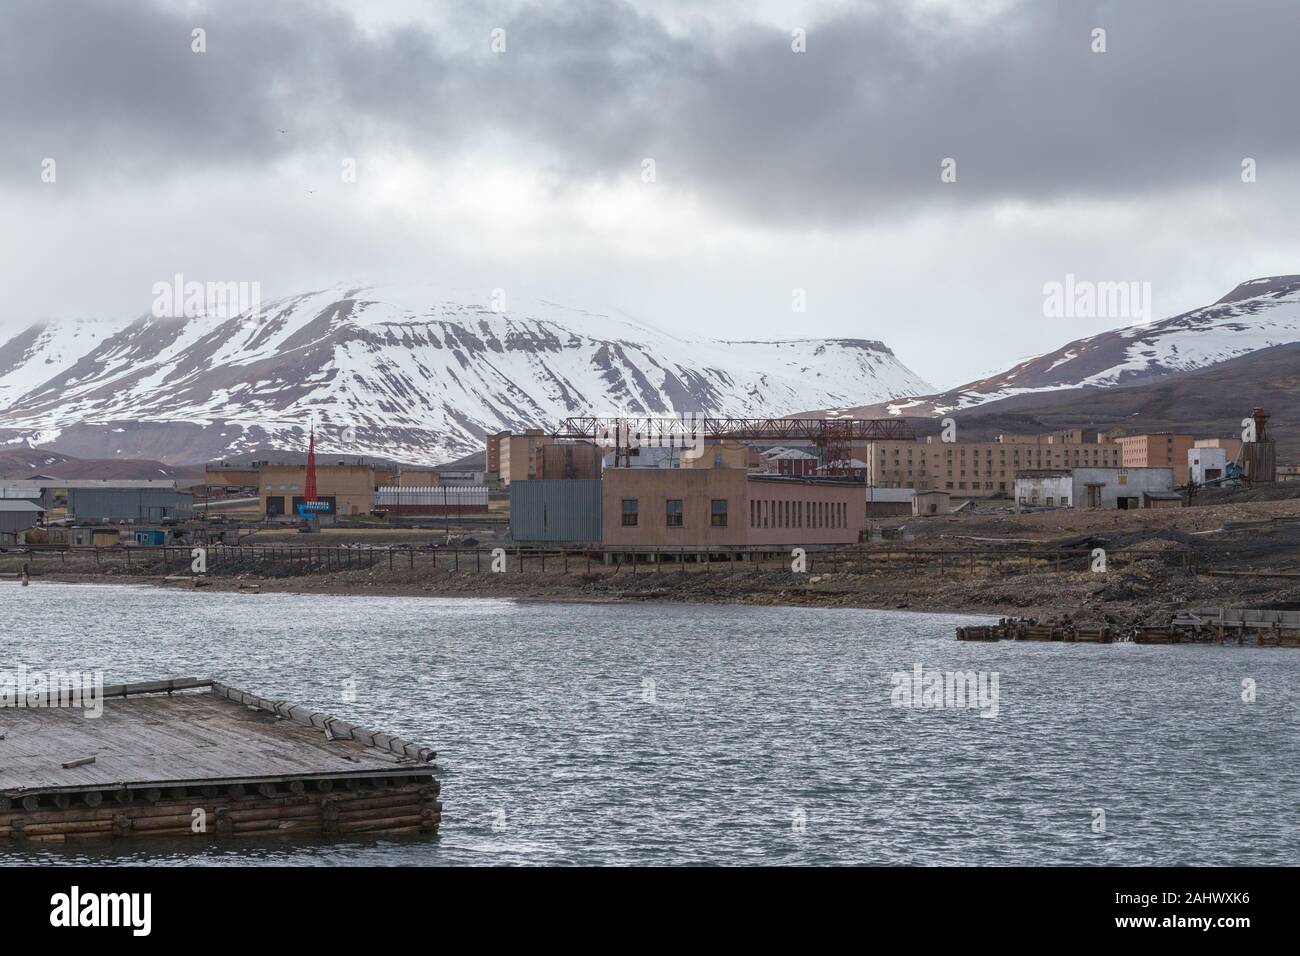 Le quai de Pyramiden, une fédération de l'extraction du charbon sur le règlement sur le Spitzberg, archipel norvégien de Svalbard dans l'Arctique Banque D'Images